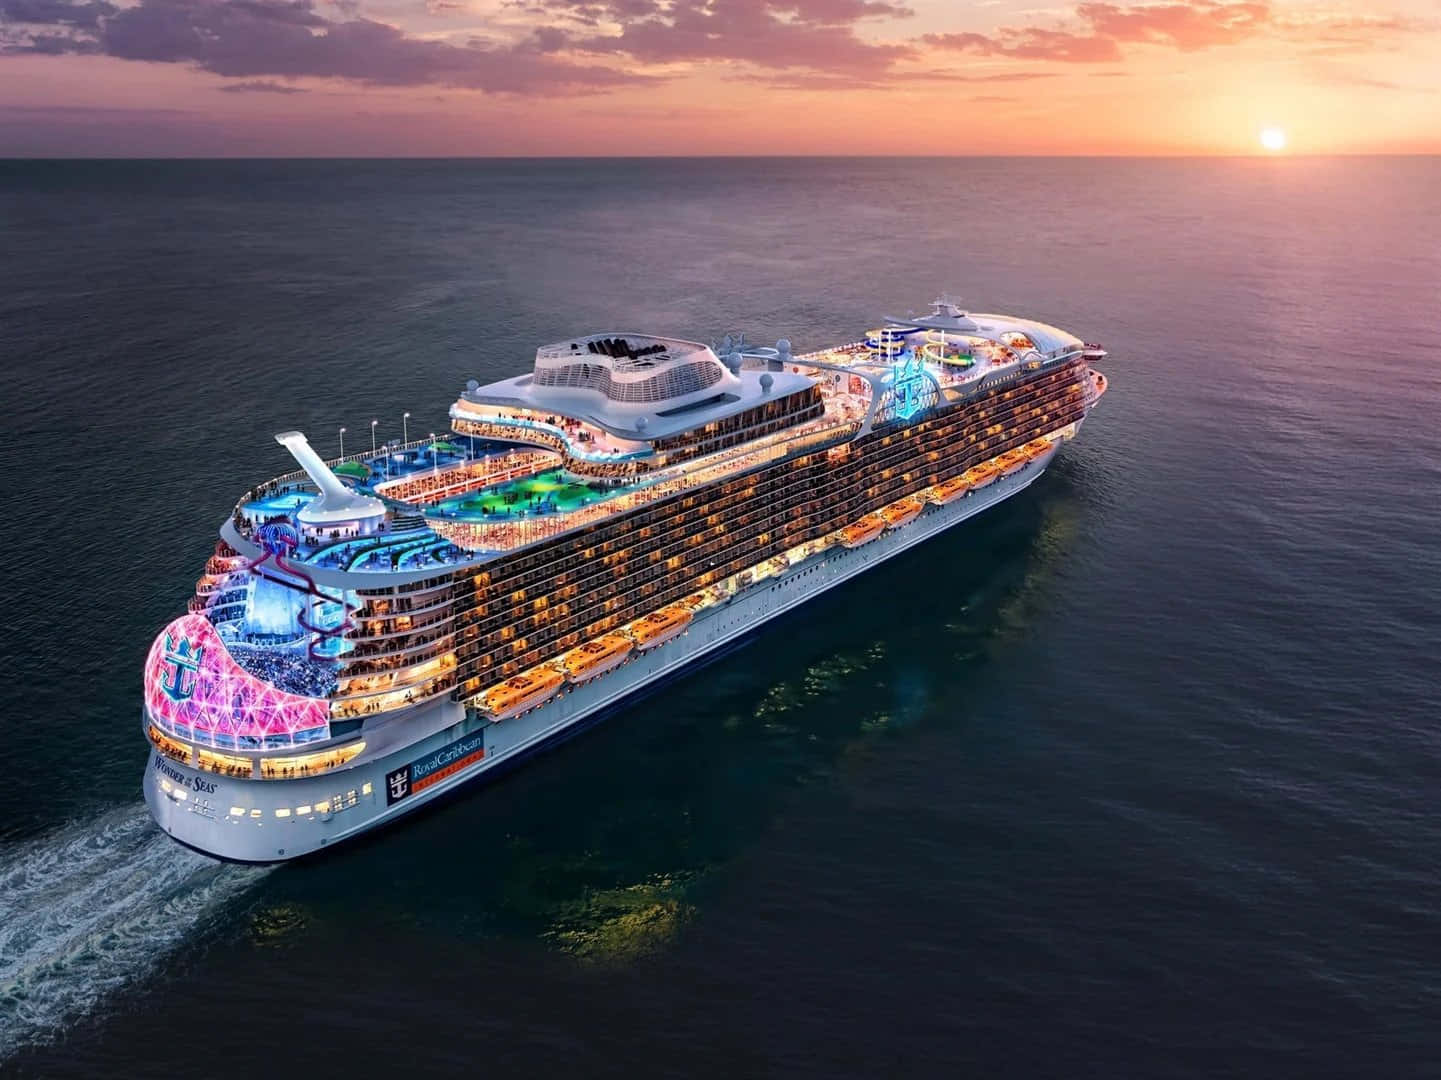 A majestic cruise ship sails the blue seas